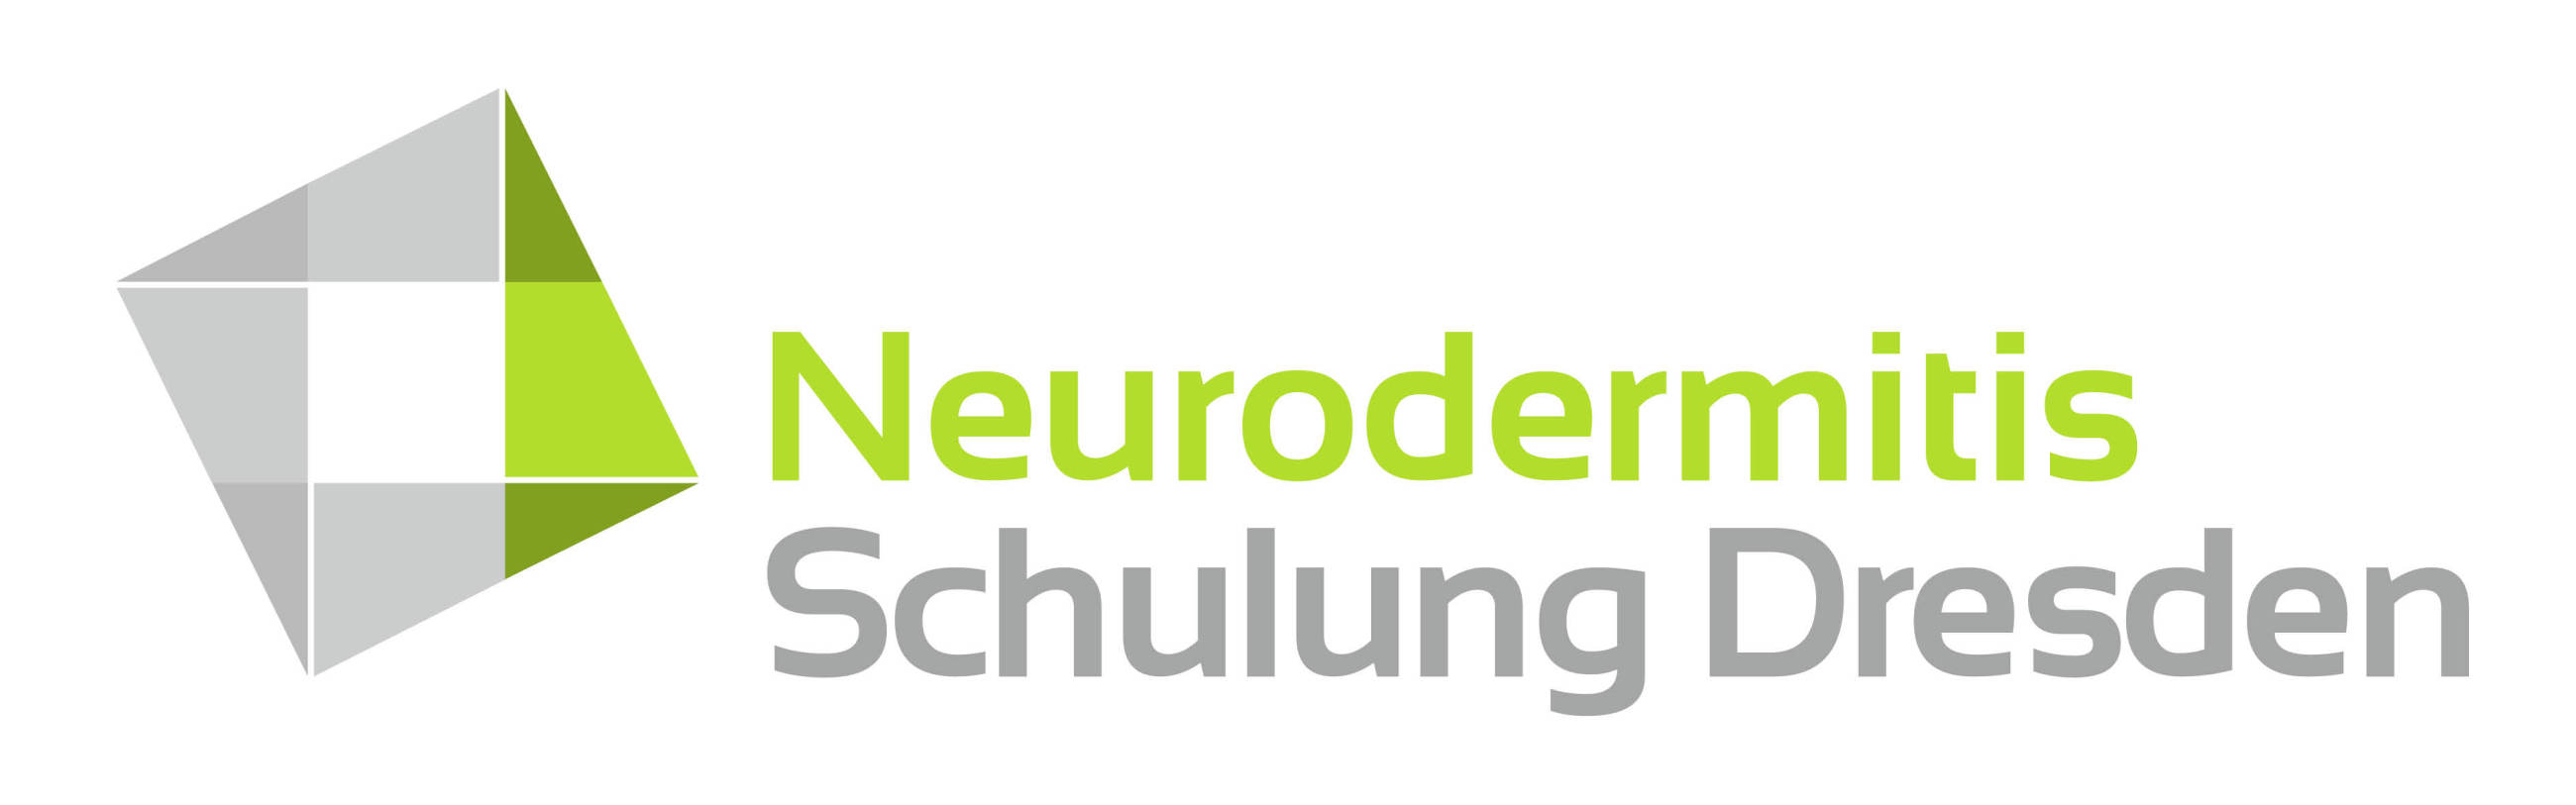 (c) Neurodermitisschulung-dresden.de